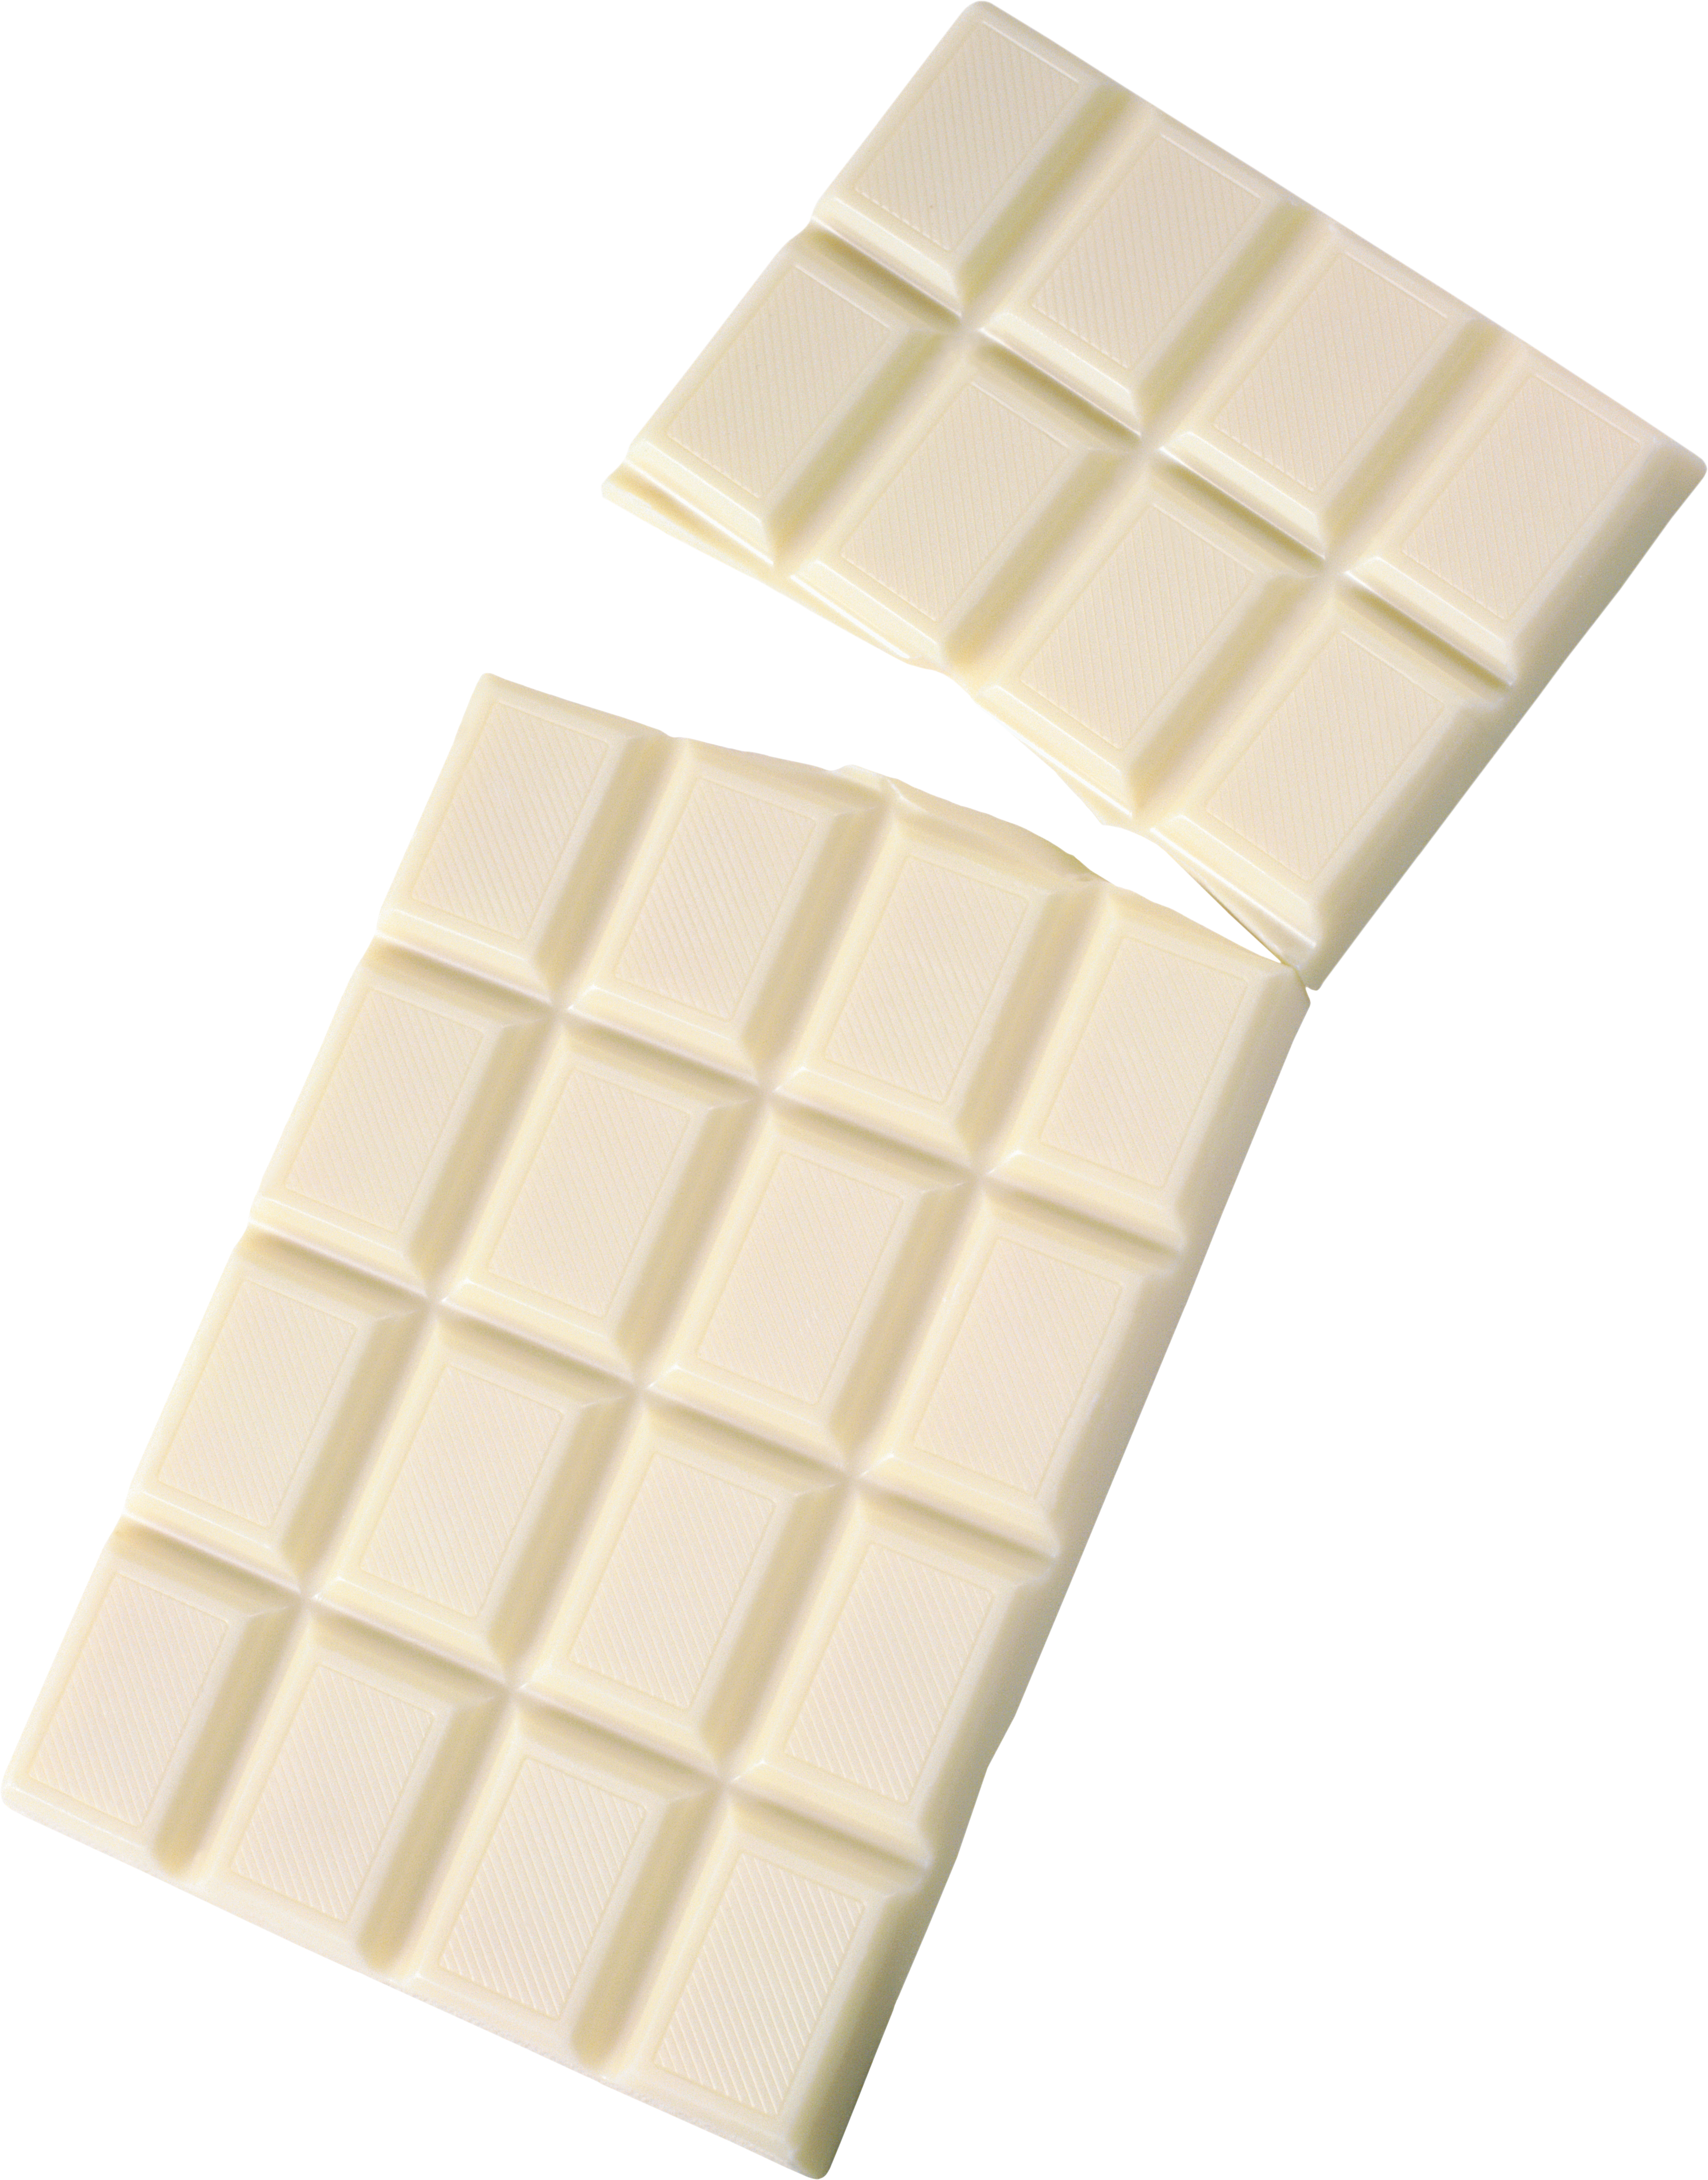 ホワイトチョコレート